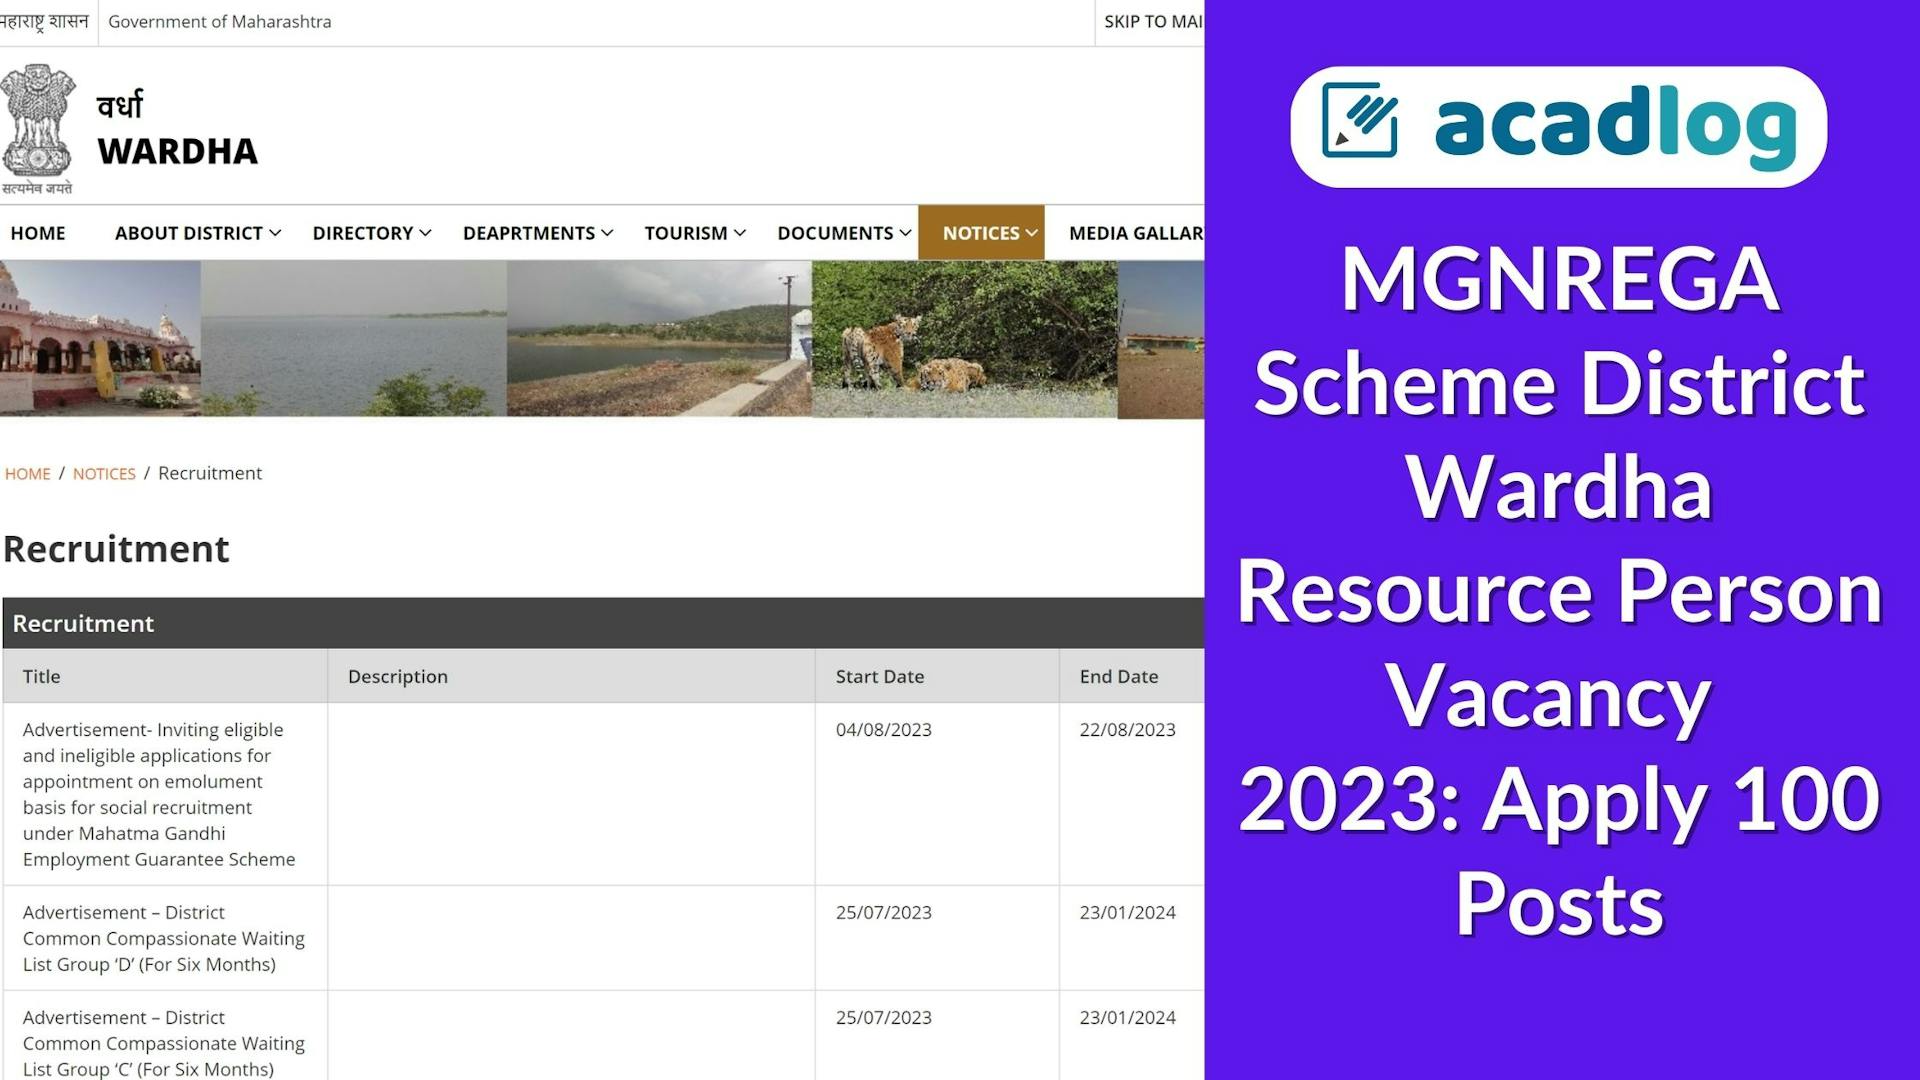 MGNREGA Scheme District Wardha Resource Person Vacancy 2023: Apply 100 Posts